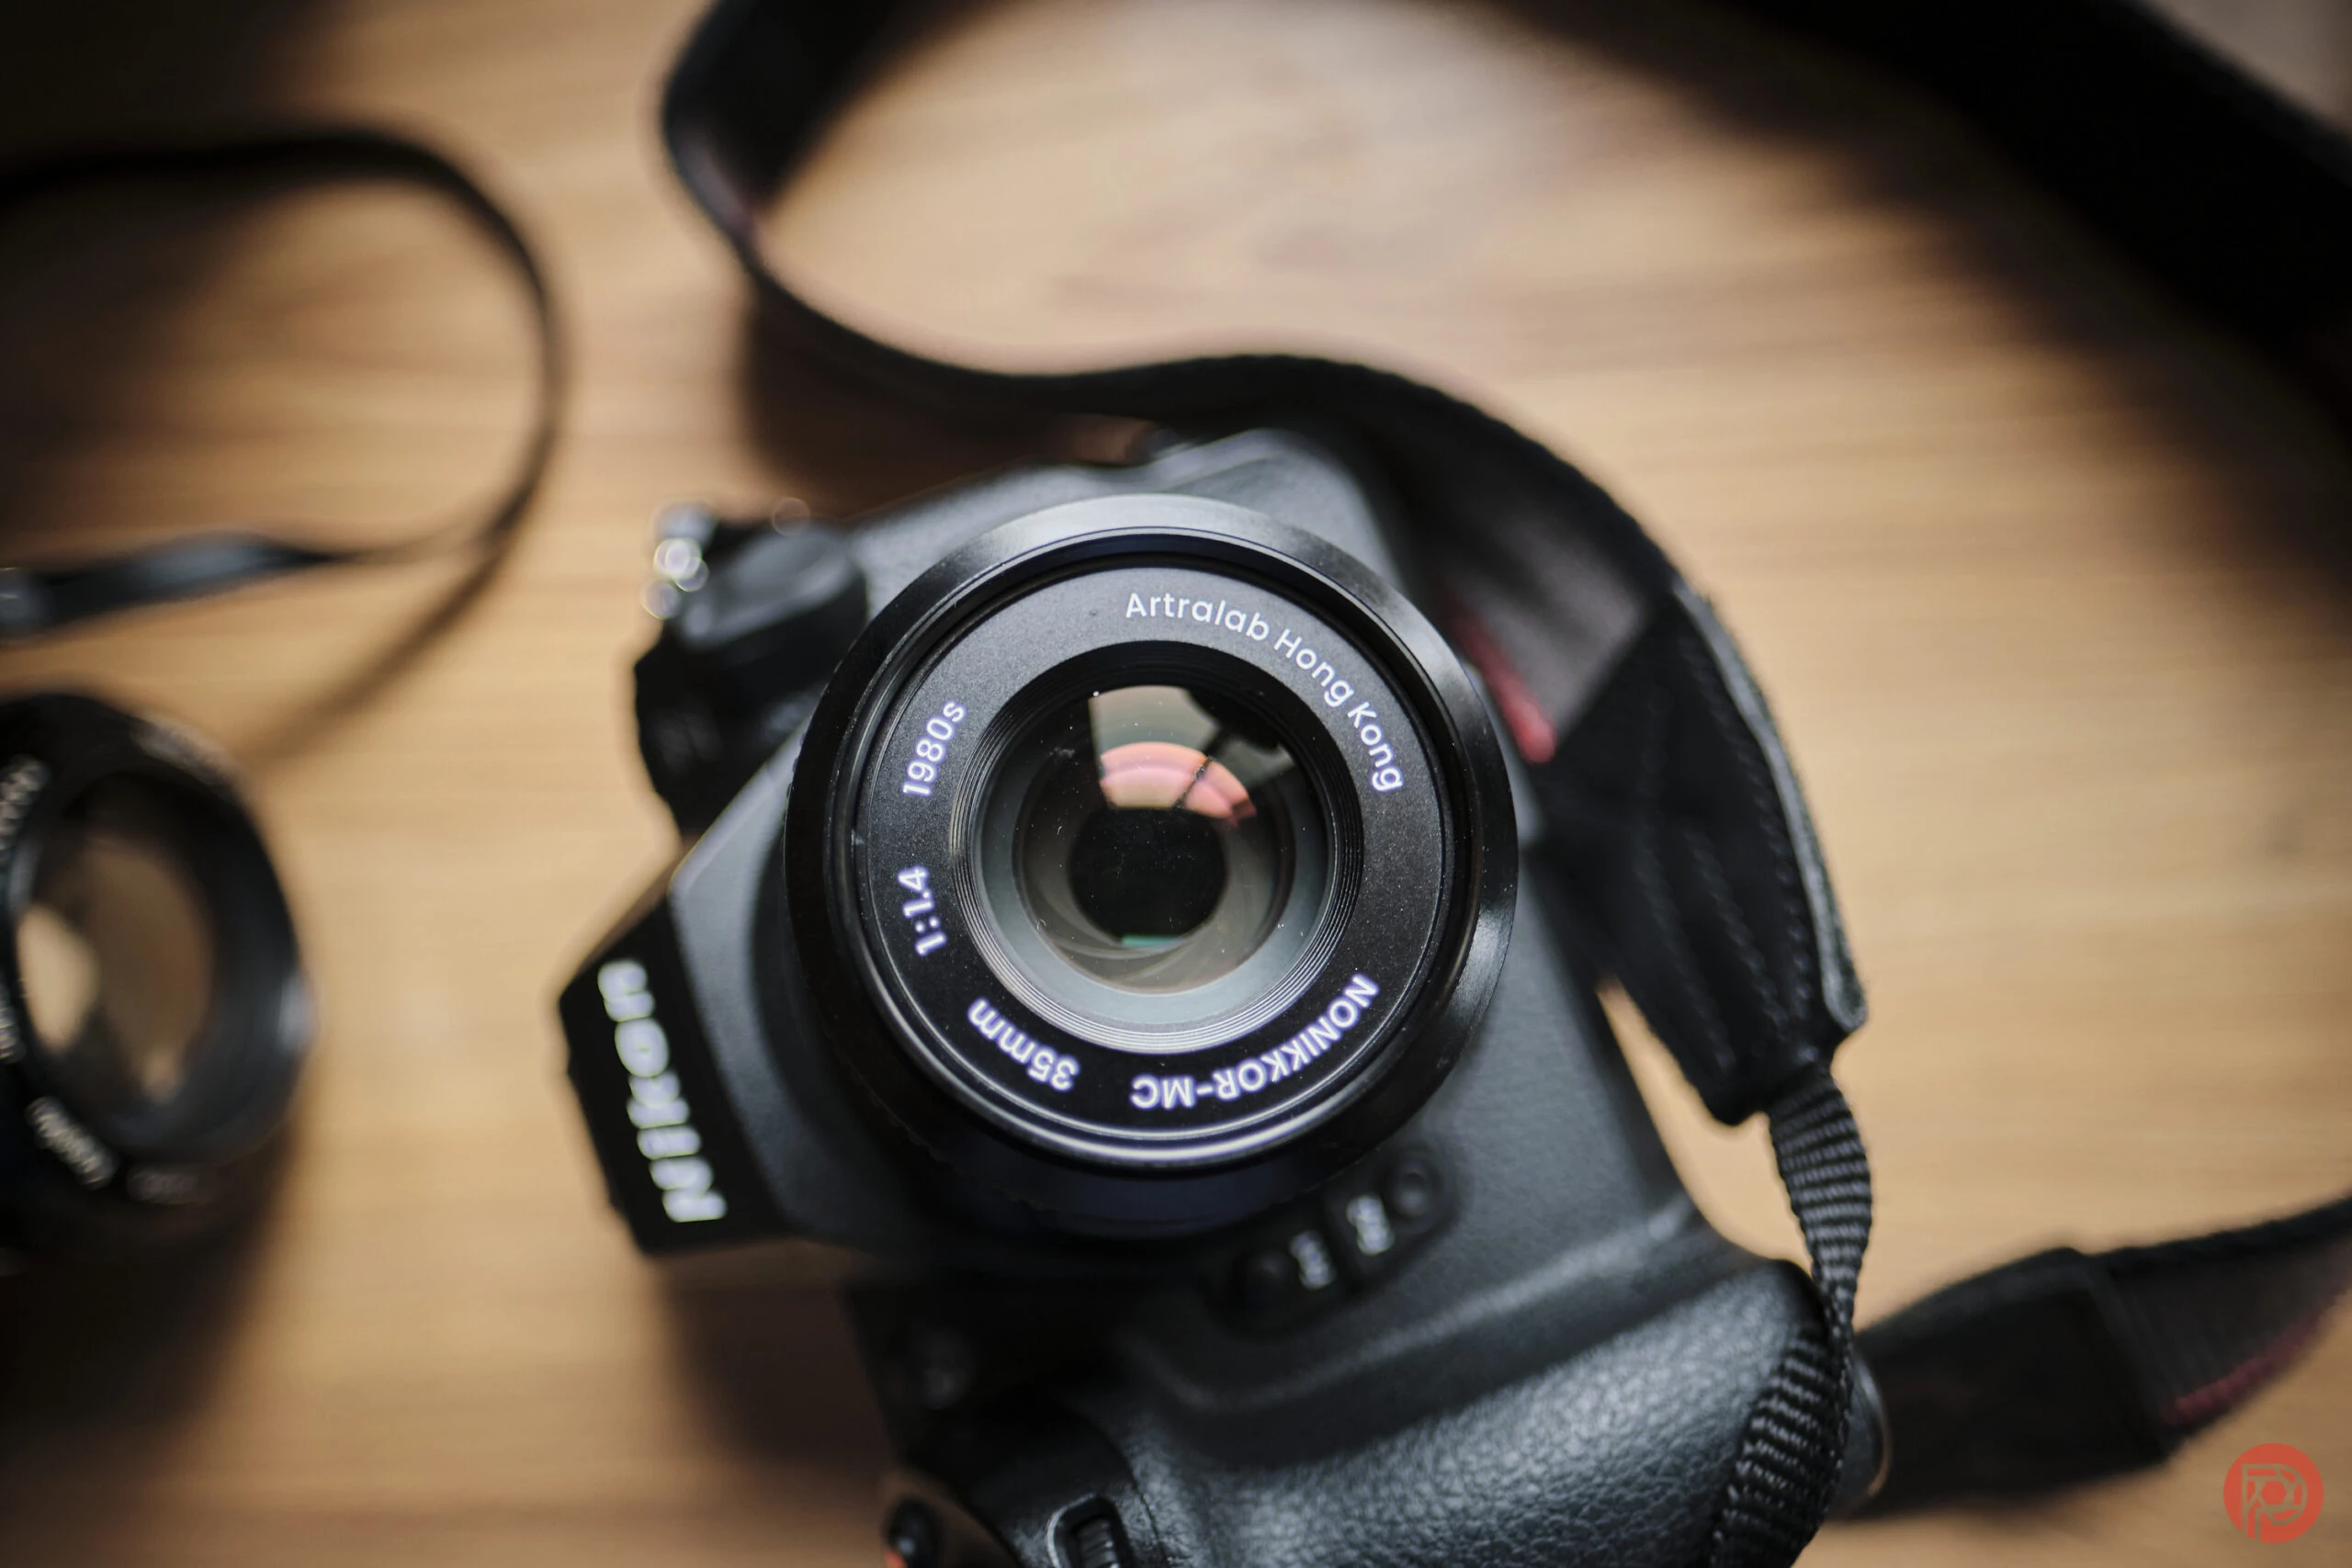 Segera Hadir Lensa Artralab di DOSS, Lensa Klasik yang Canggih Untuk Banyak Kamera.